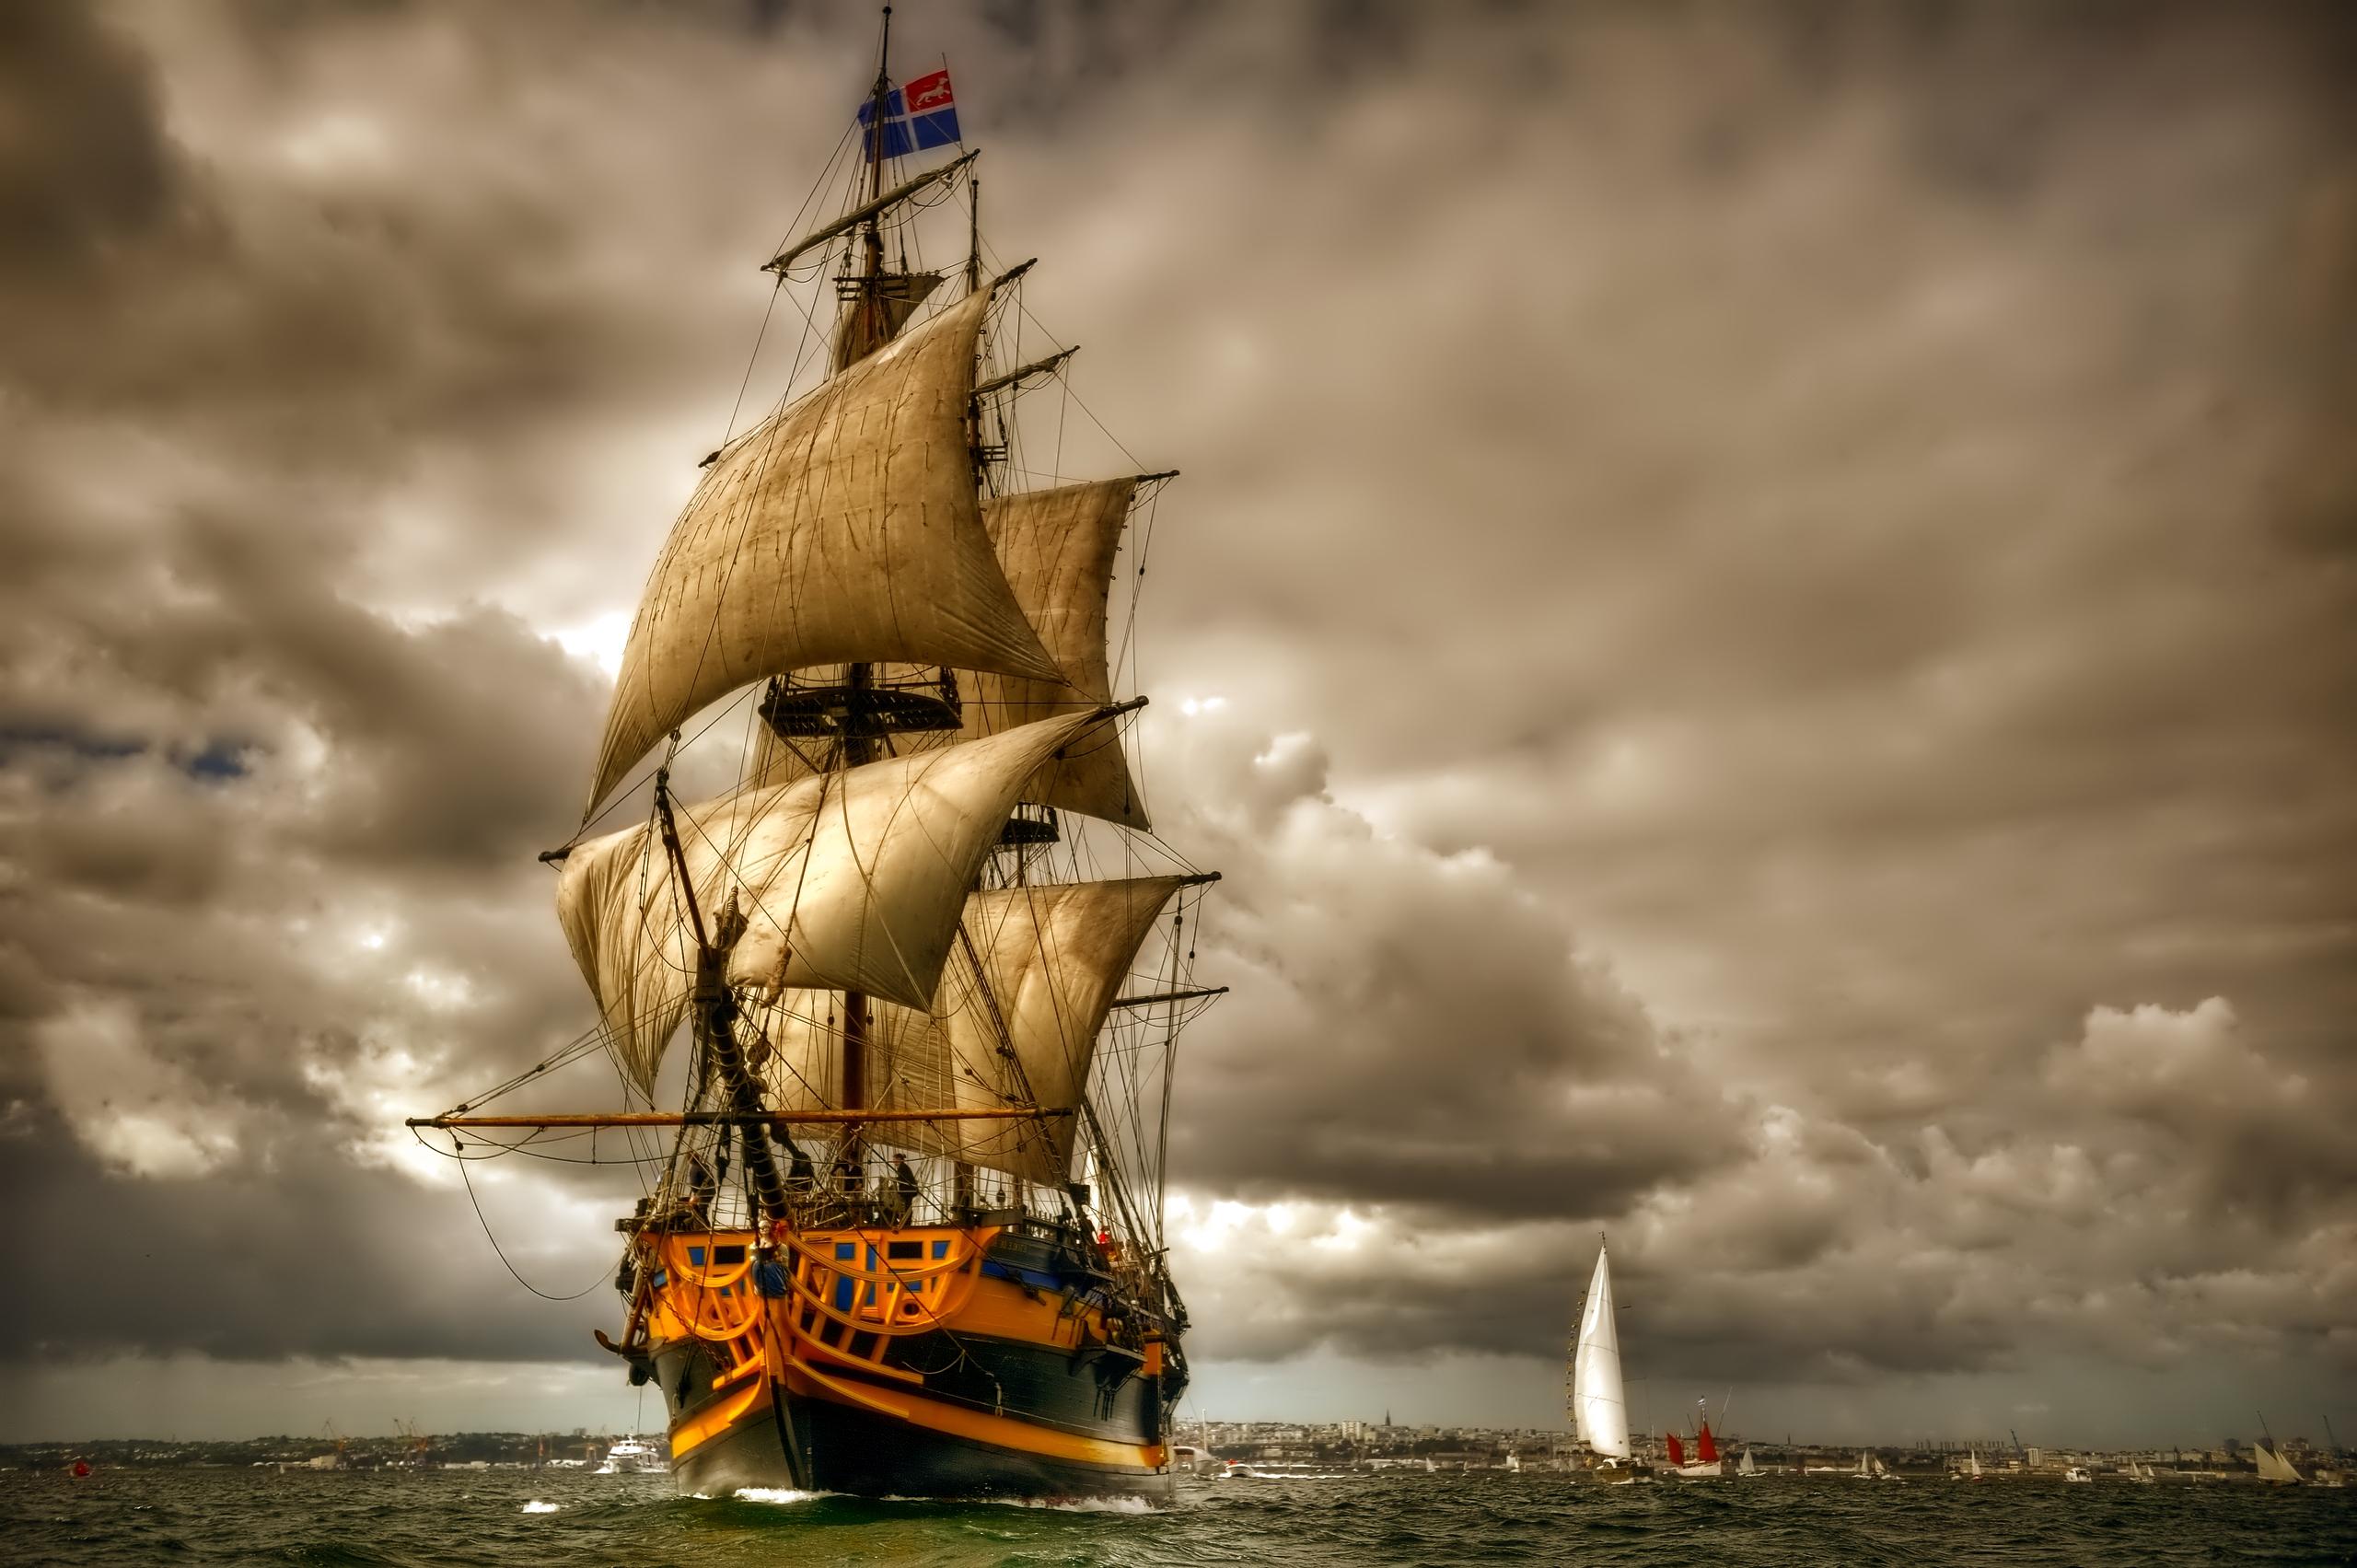 Free HD sea, sail, sailing ship, vehicles, boat, cloud, ocean, sailboat, sailing, ship, sky